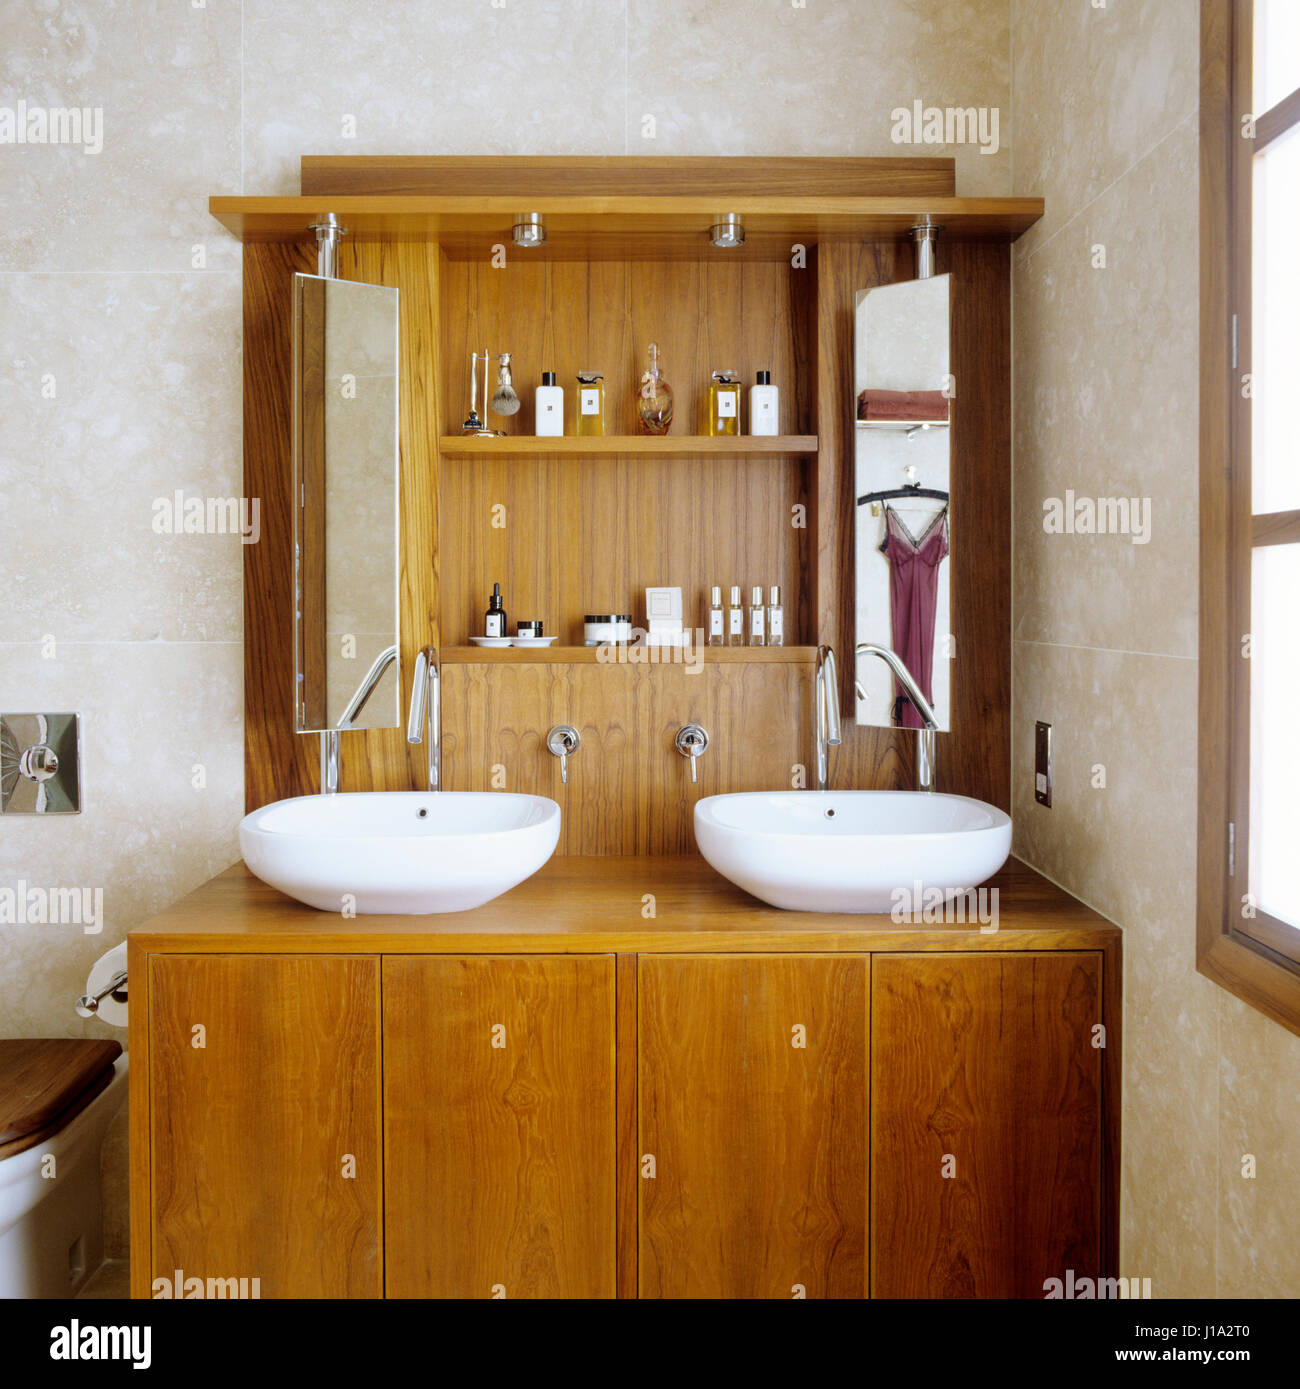 Bathroom Sinks - Undermount, Pedestal & More: rustic bathroom sink vanity